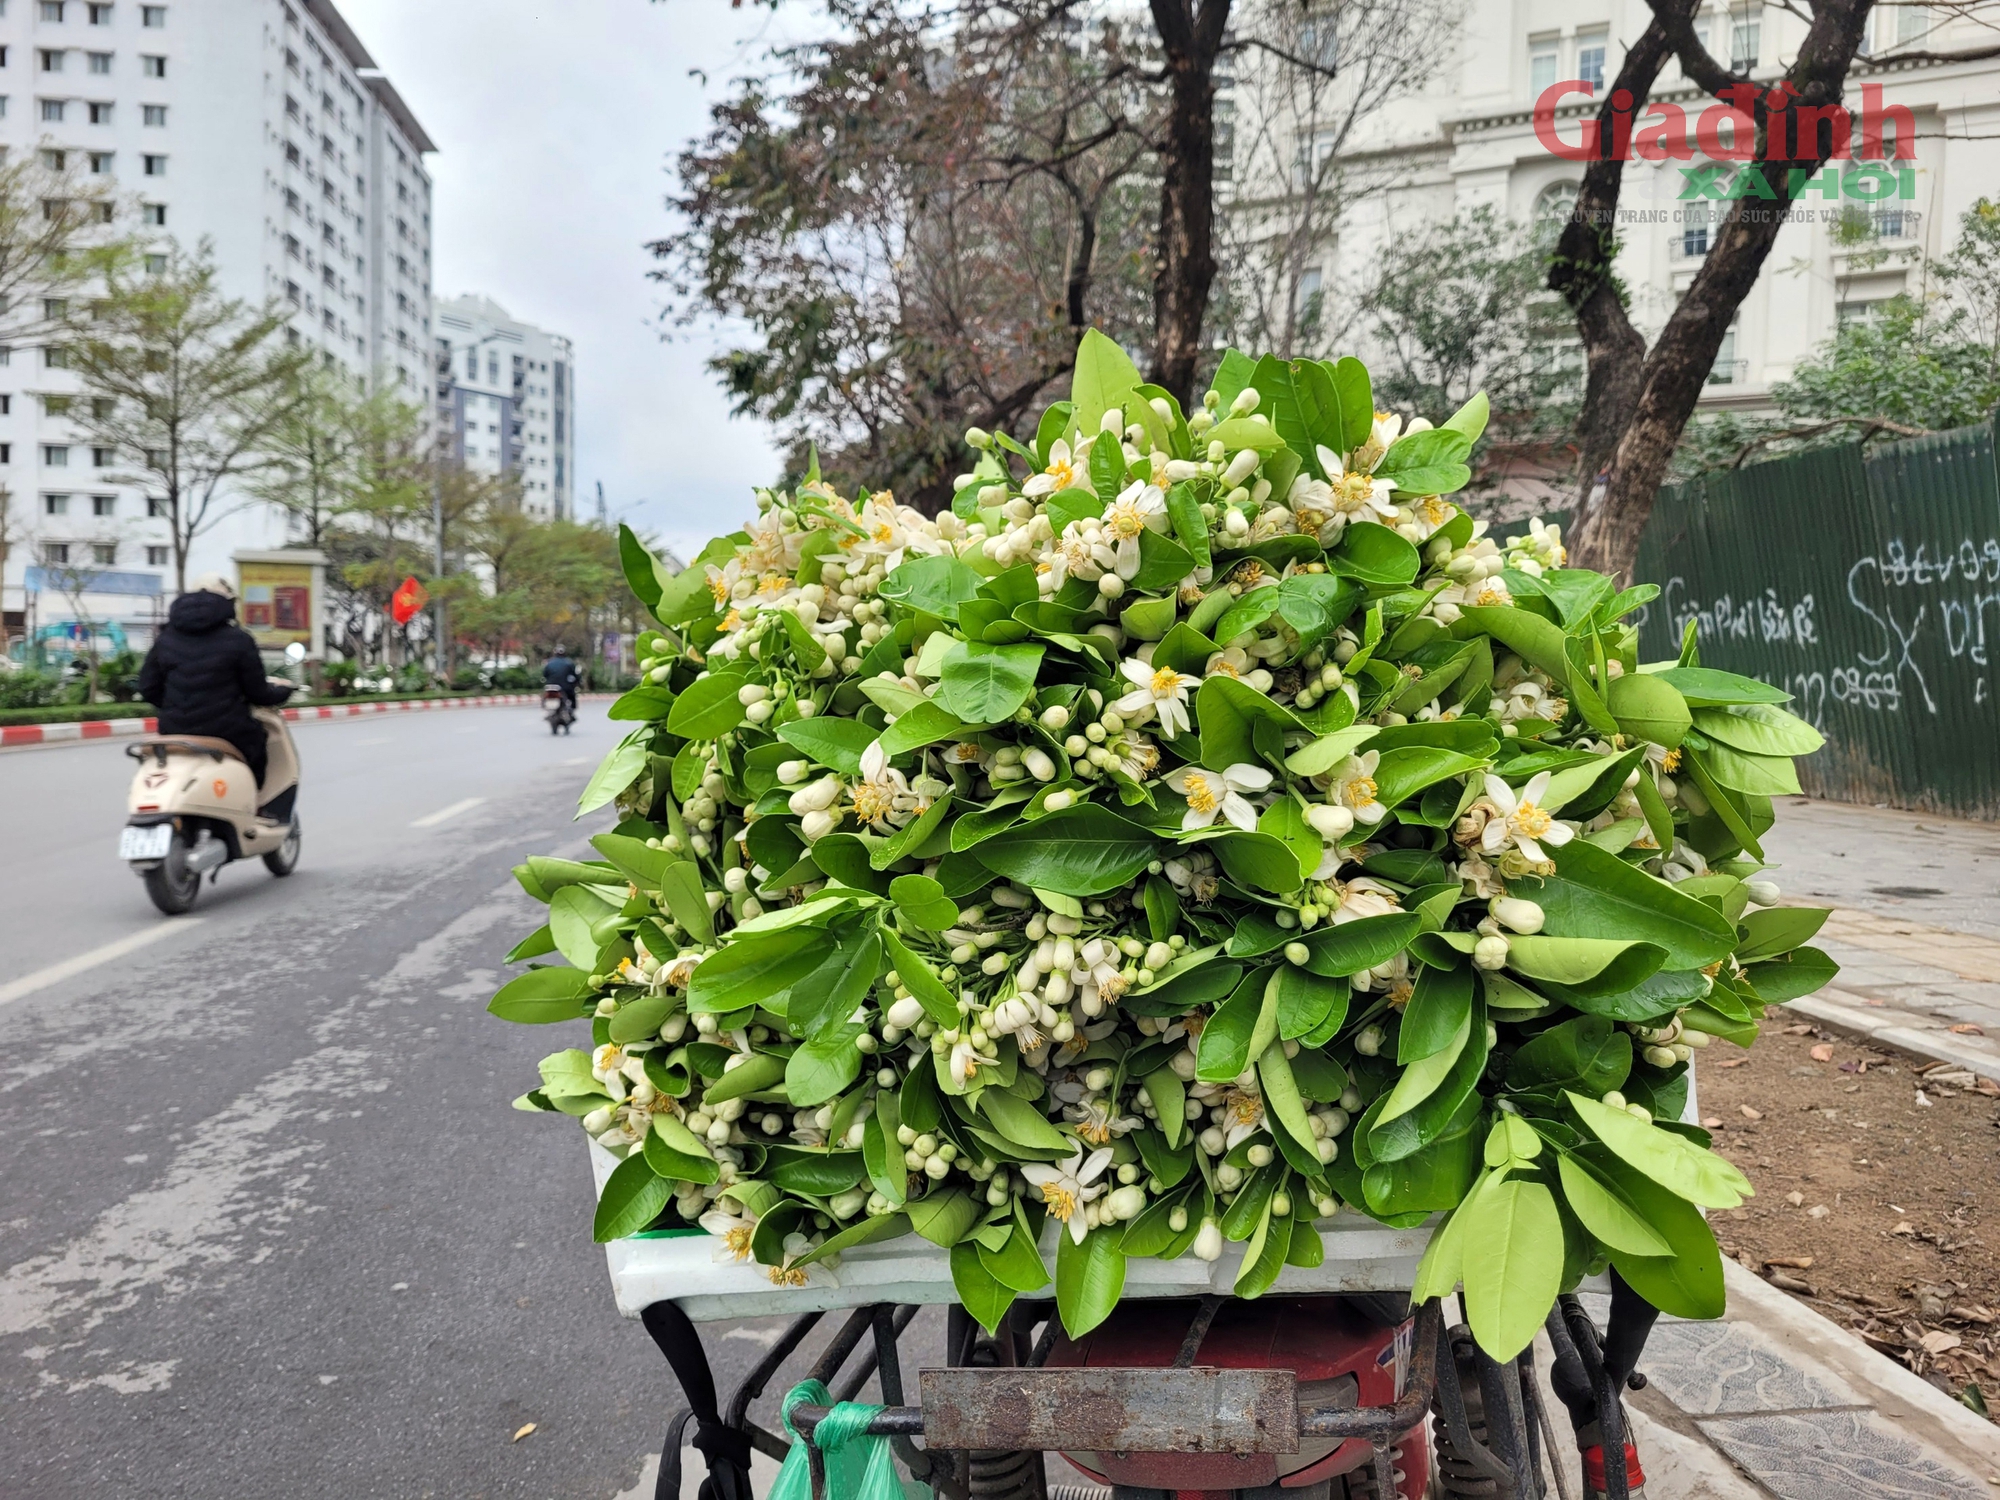 Hoa Bưởi đầu mùa ở Hà Nội thơm ngát phố bán nửa triệu đồng/kg vẫn đắt hàng- Ảnh 1.